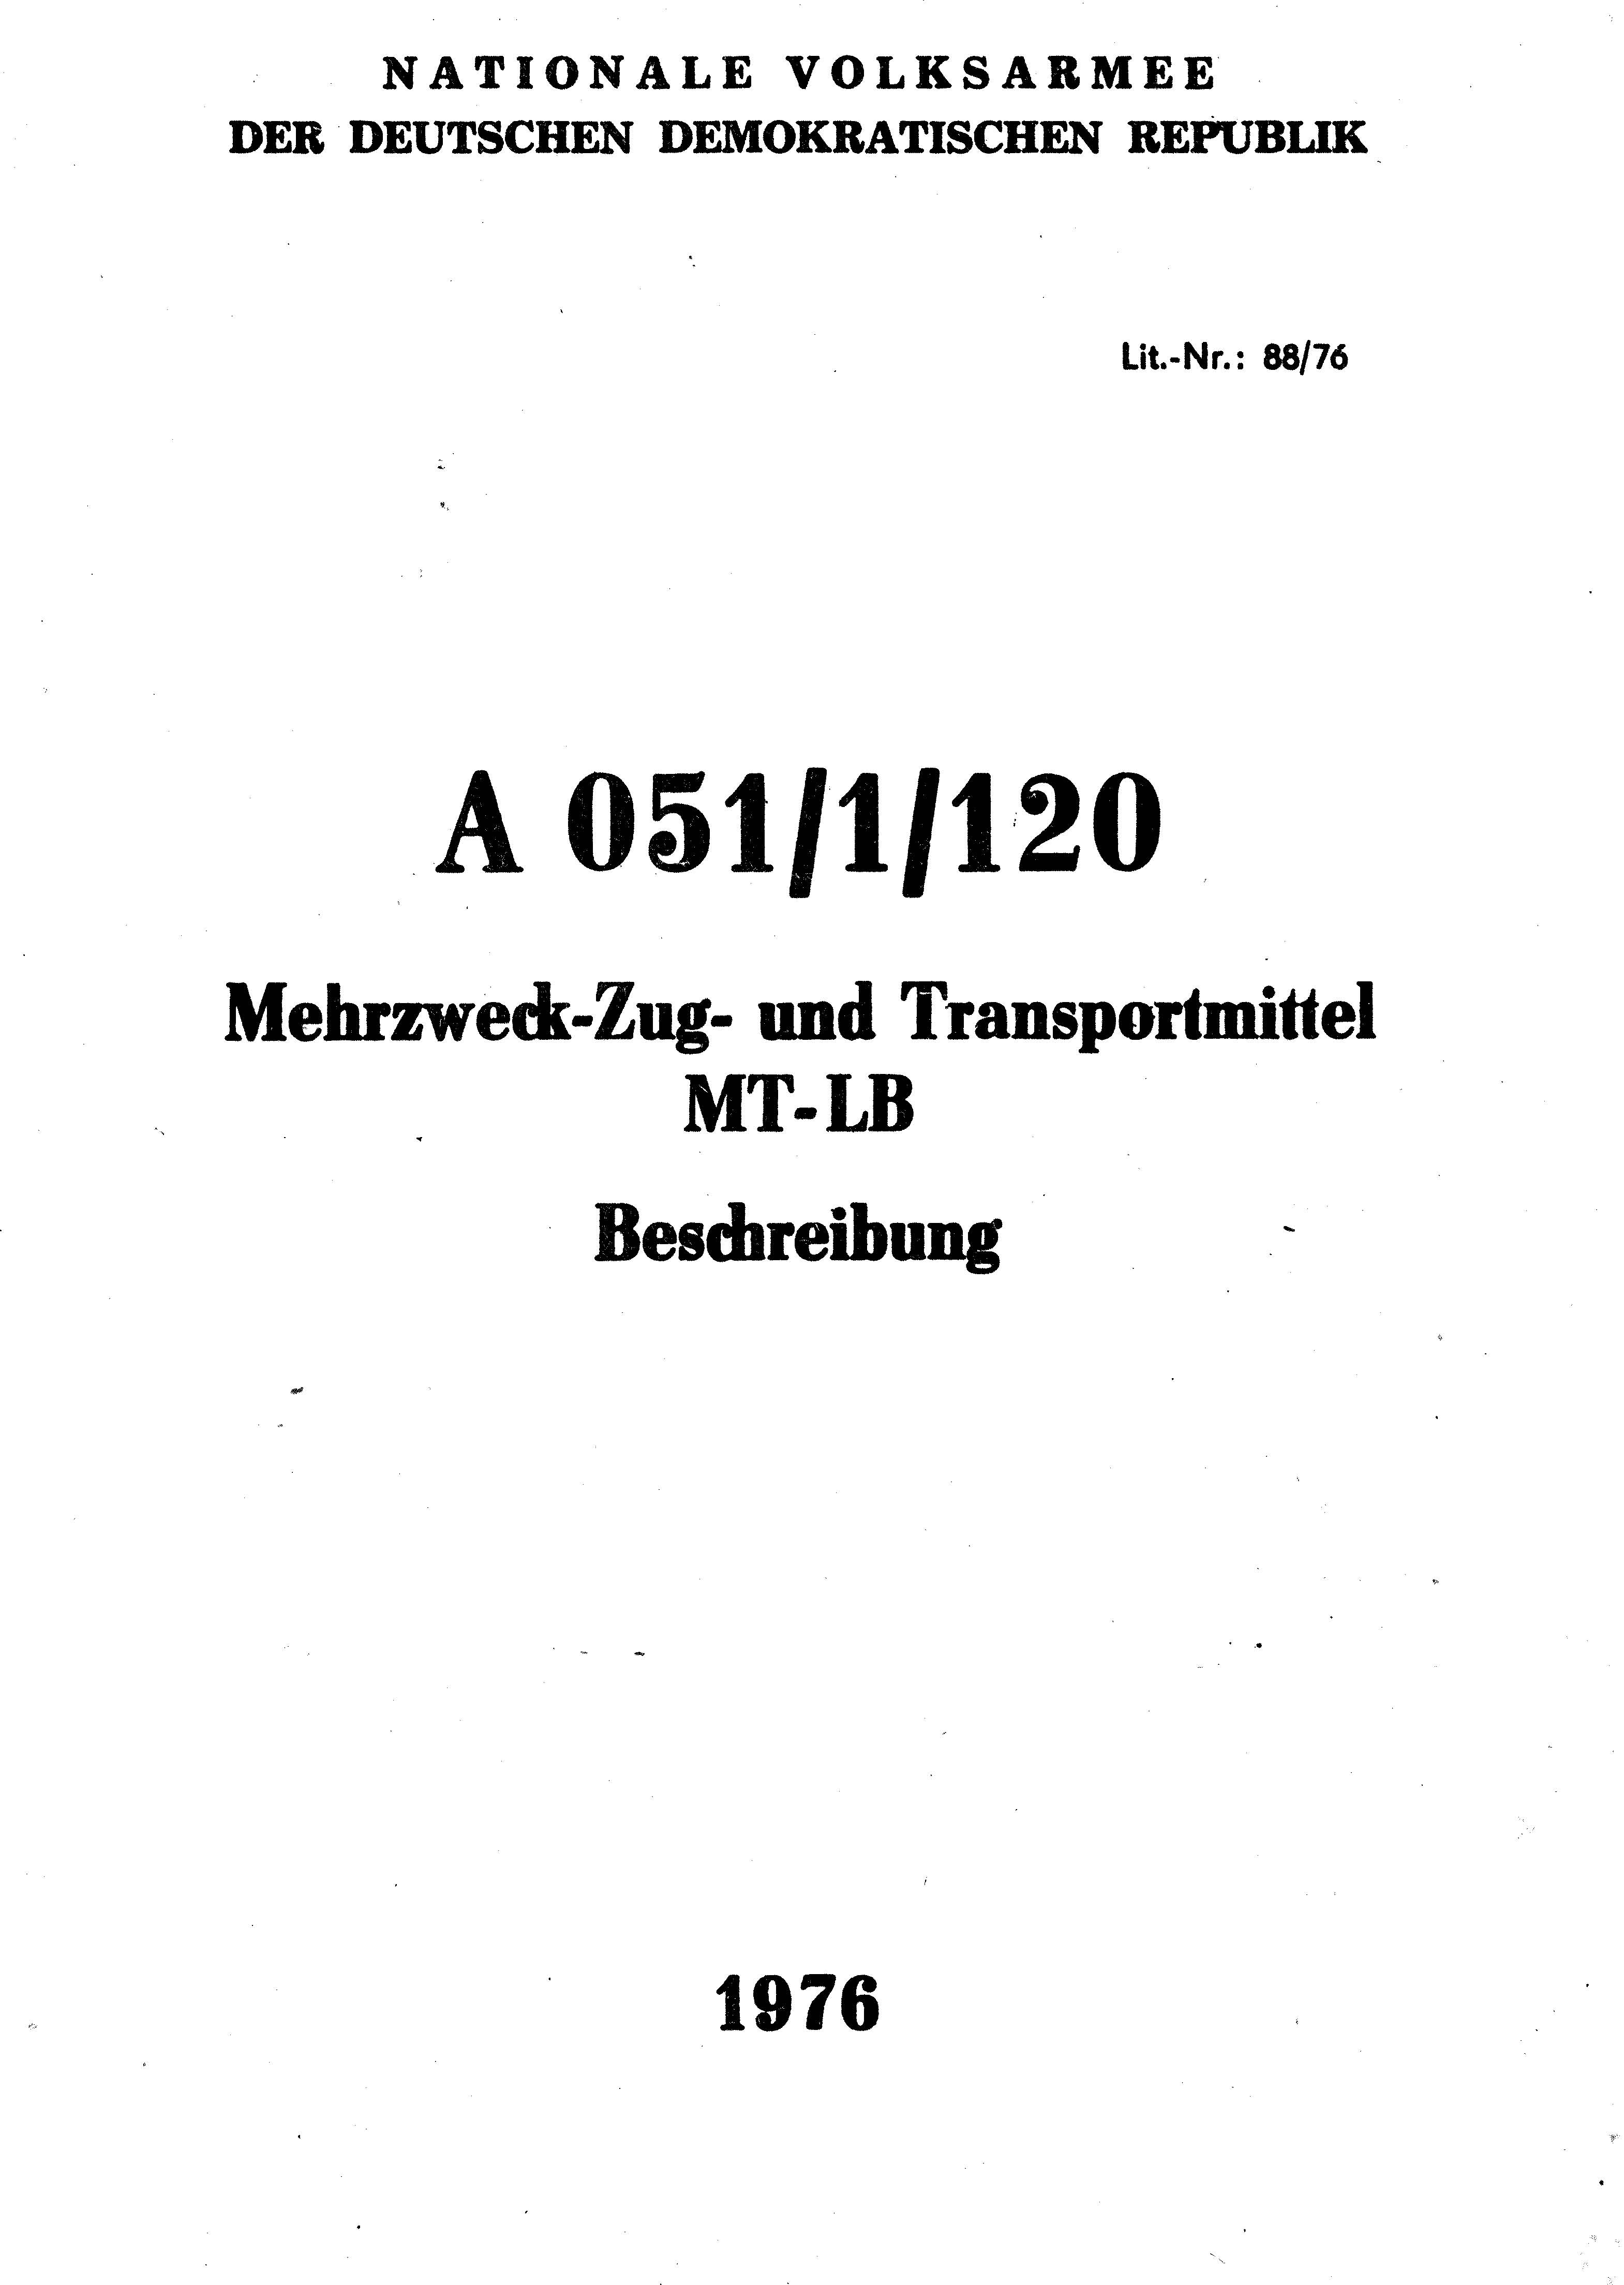 a051-1-120-mt-lb-beschreibung-1976-deckblatt.jpg